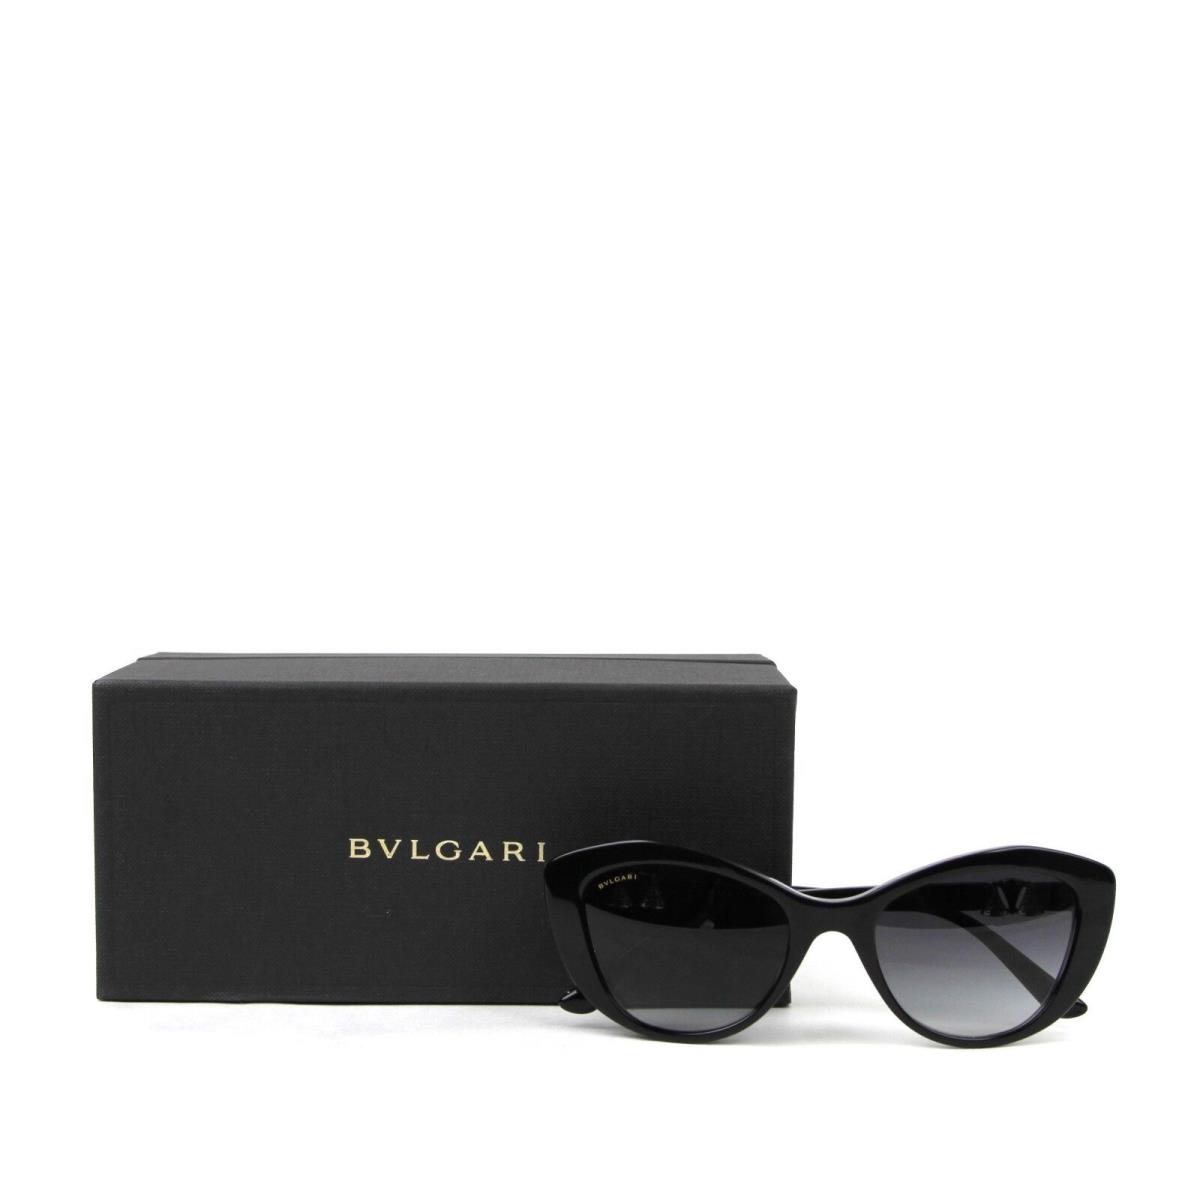 Bvlgari sunglasses  - Black Frame, Gray Lens 0